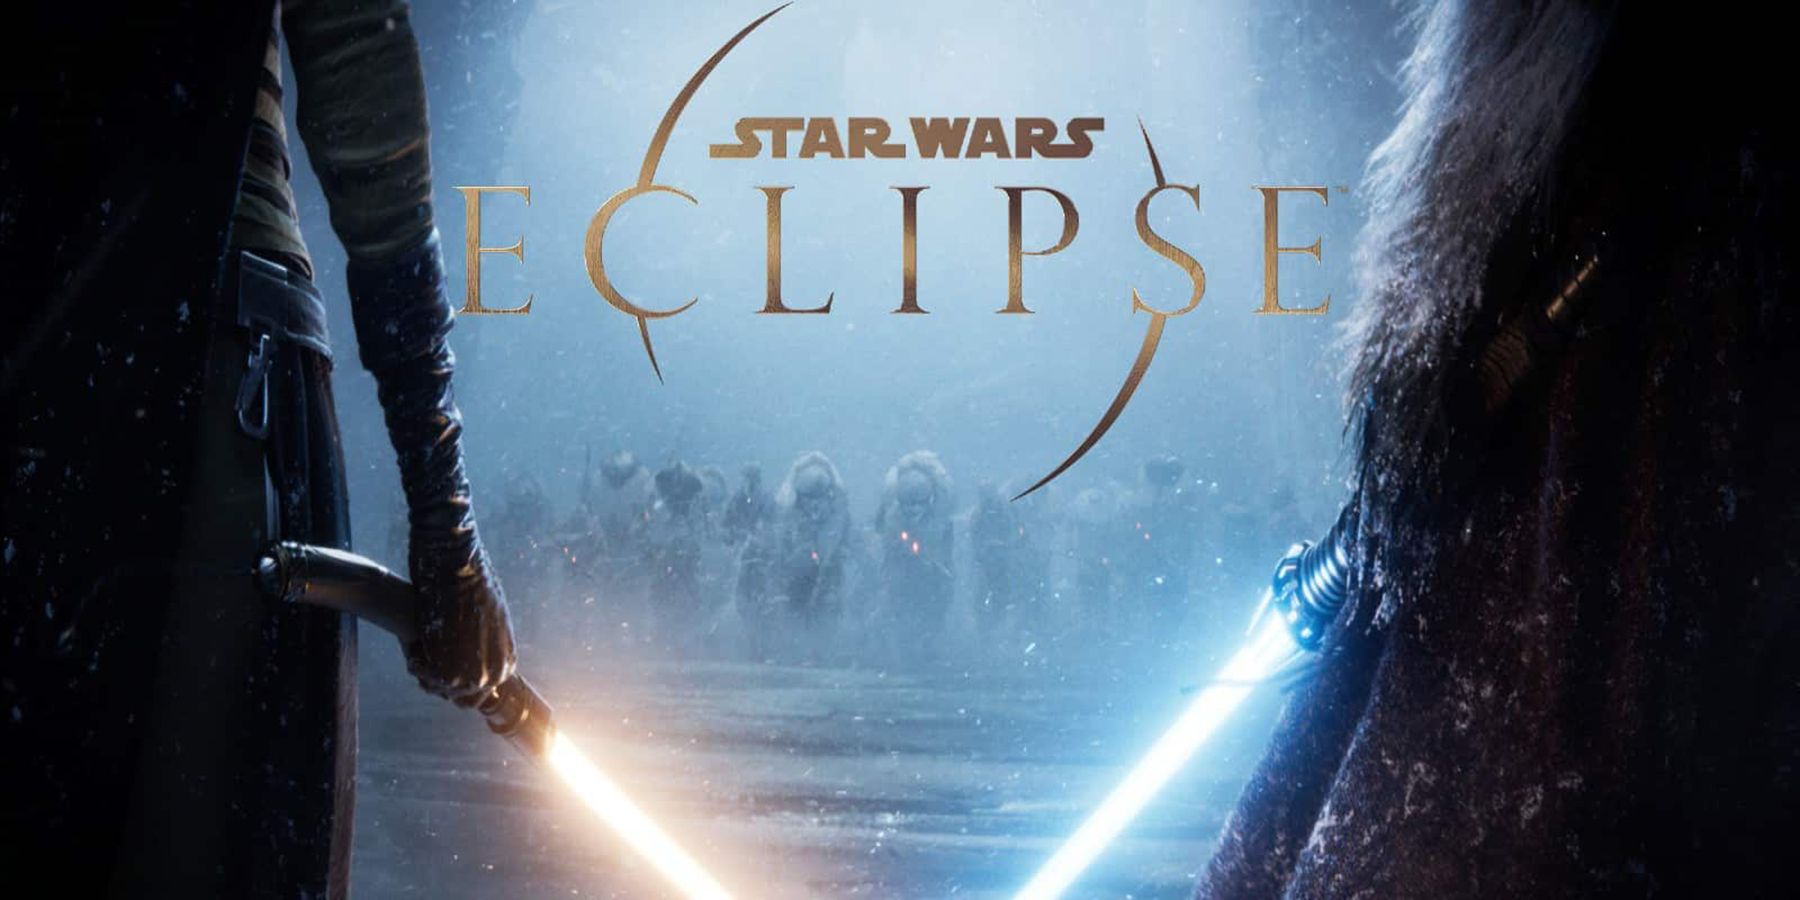 Problemy z Star Wars Eclipse stały się znane. Na razie nie wiadomo, co zrobi po opuszczeniu stanowiska